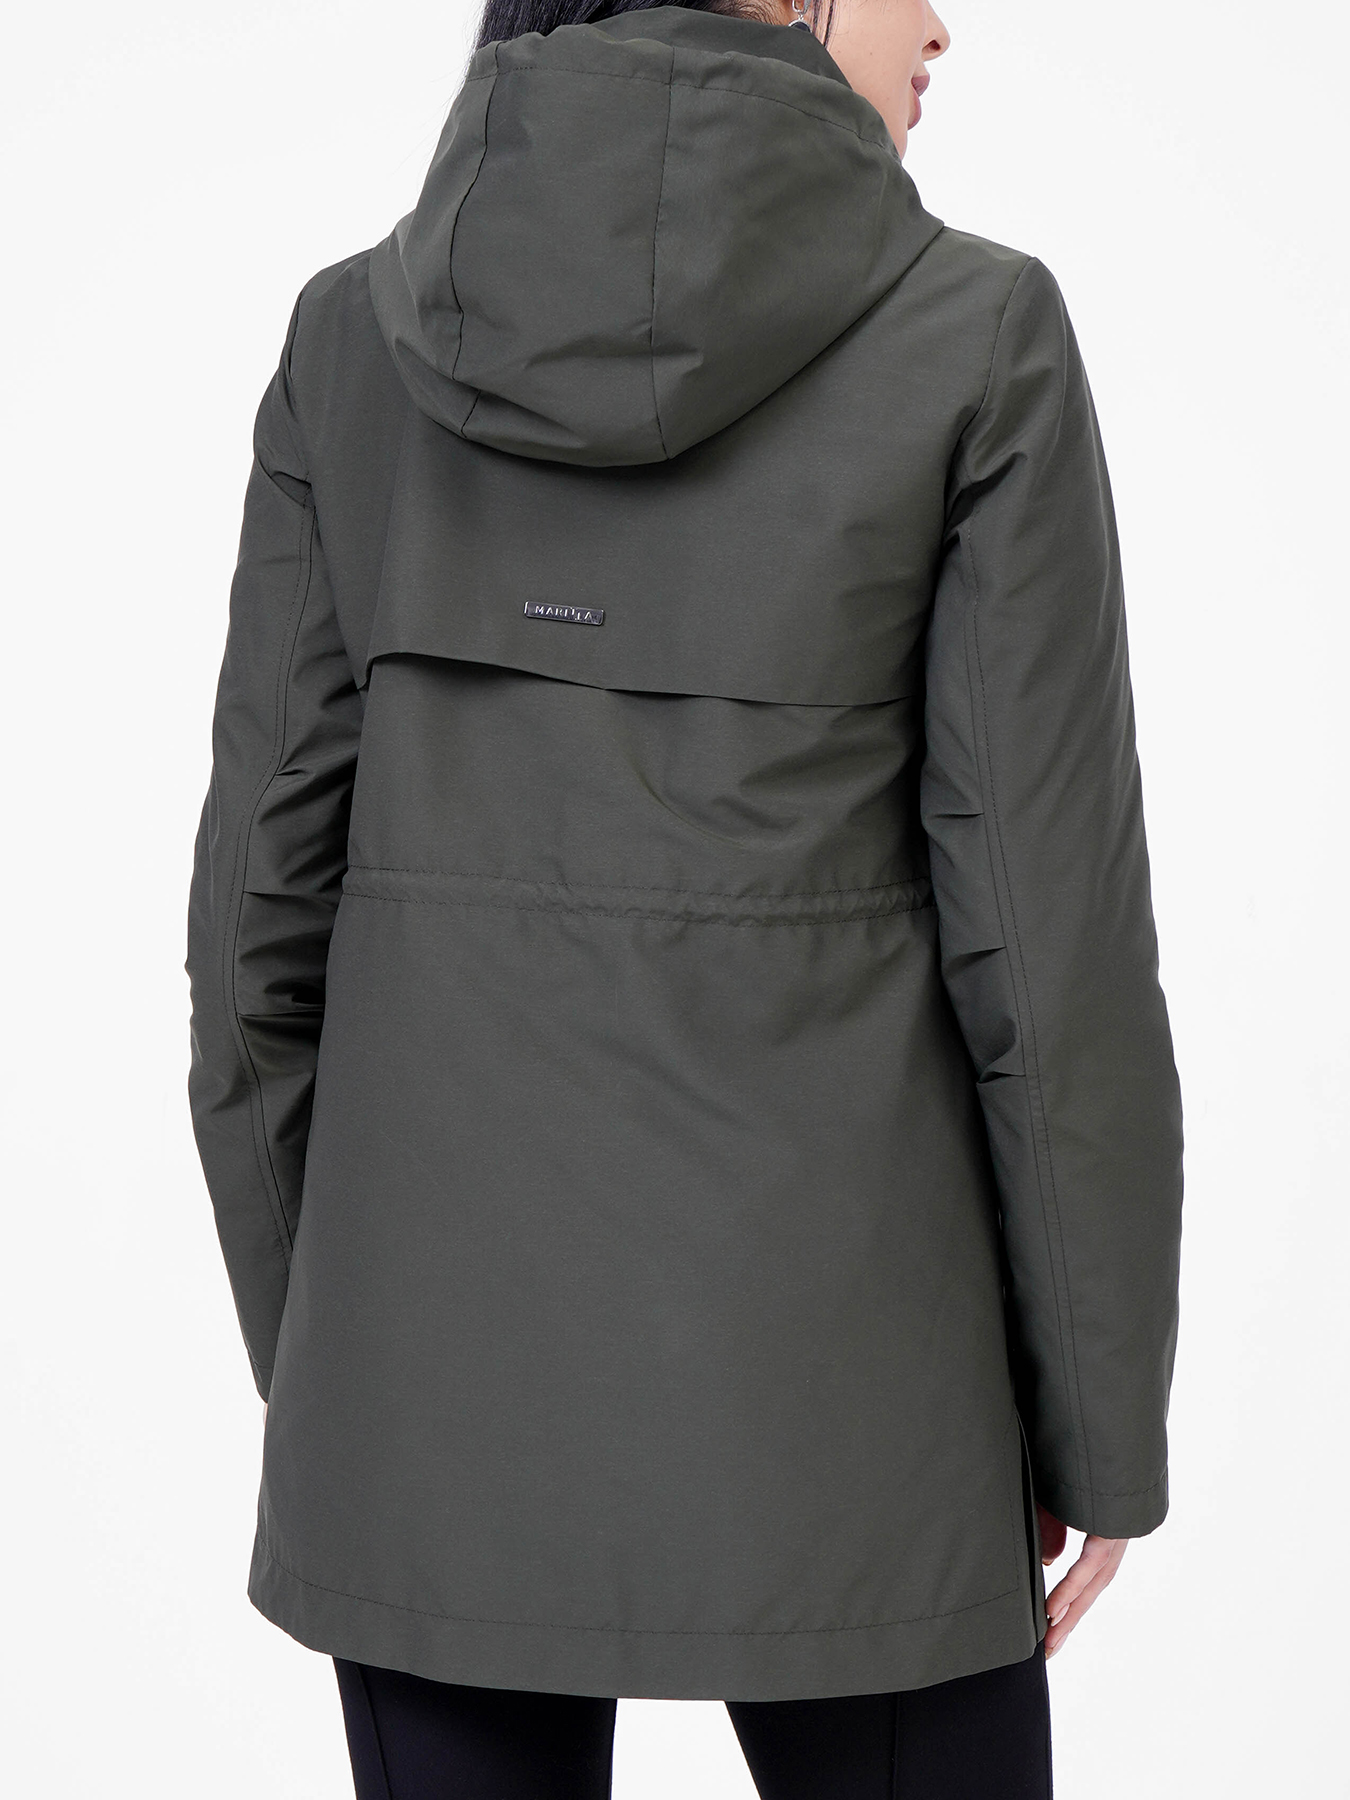 Куртка Maritta 418357-020, цвет хаки, размер 44 - фото 4